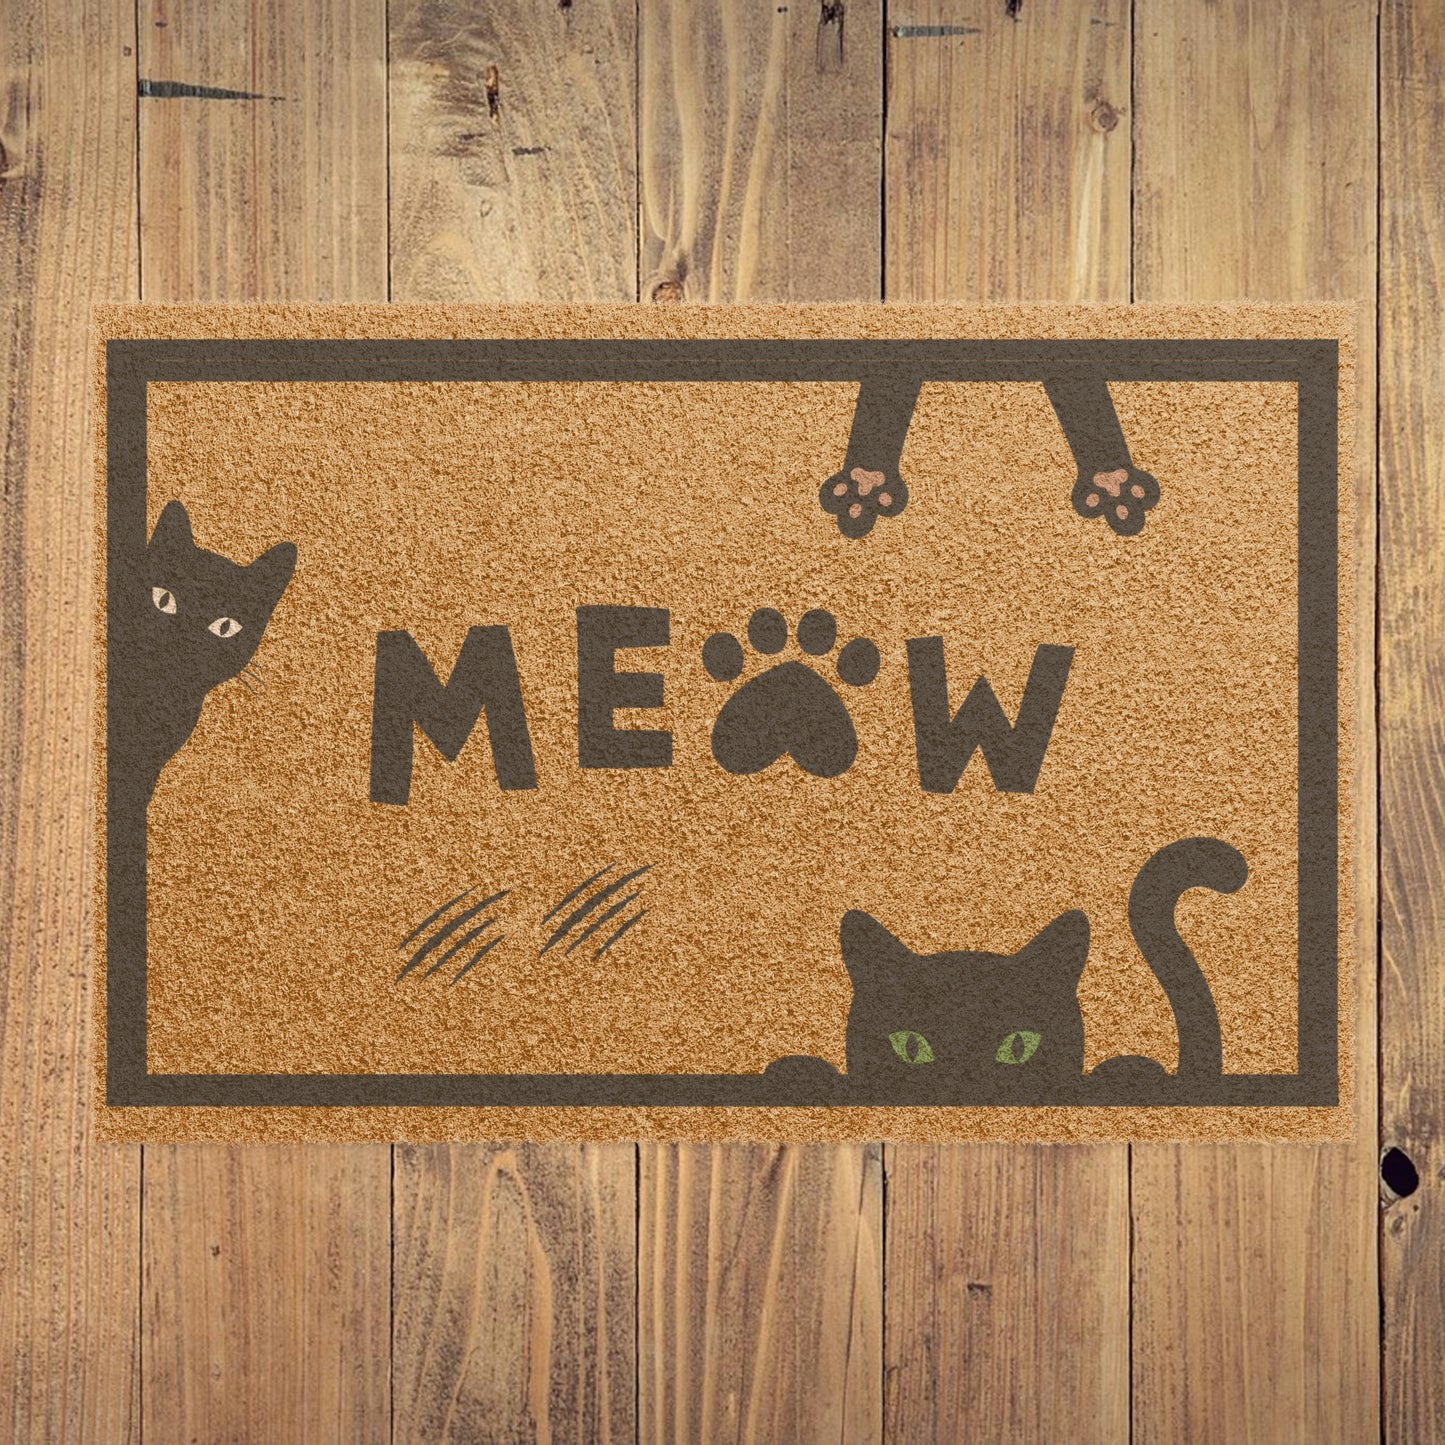 Meow Cat Welcome Mat - 24" x 16" Coir Fiber